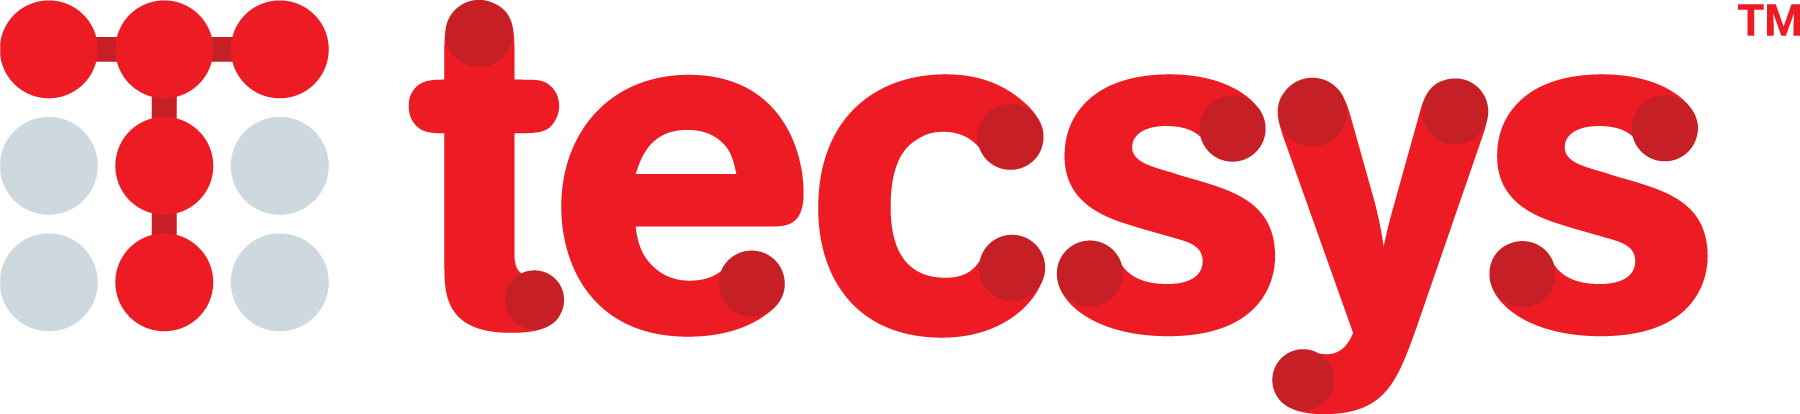 TECSYS Inc.